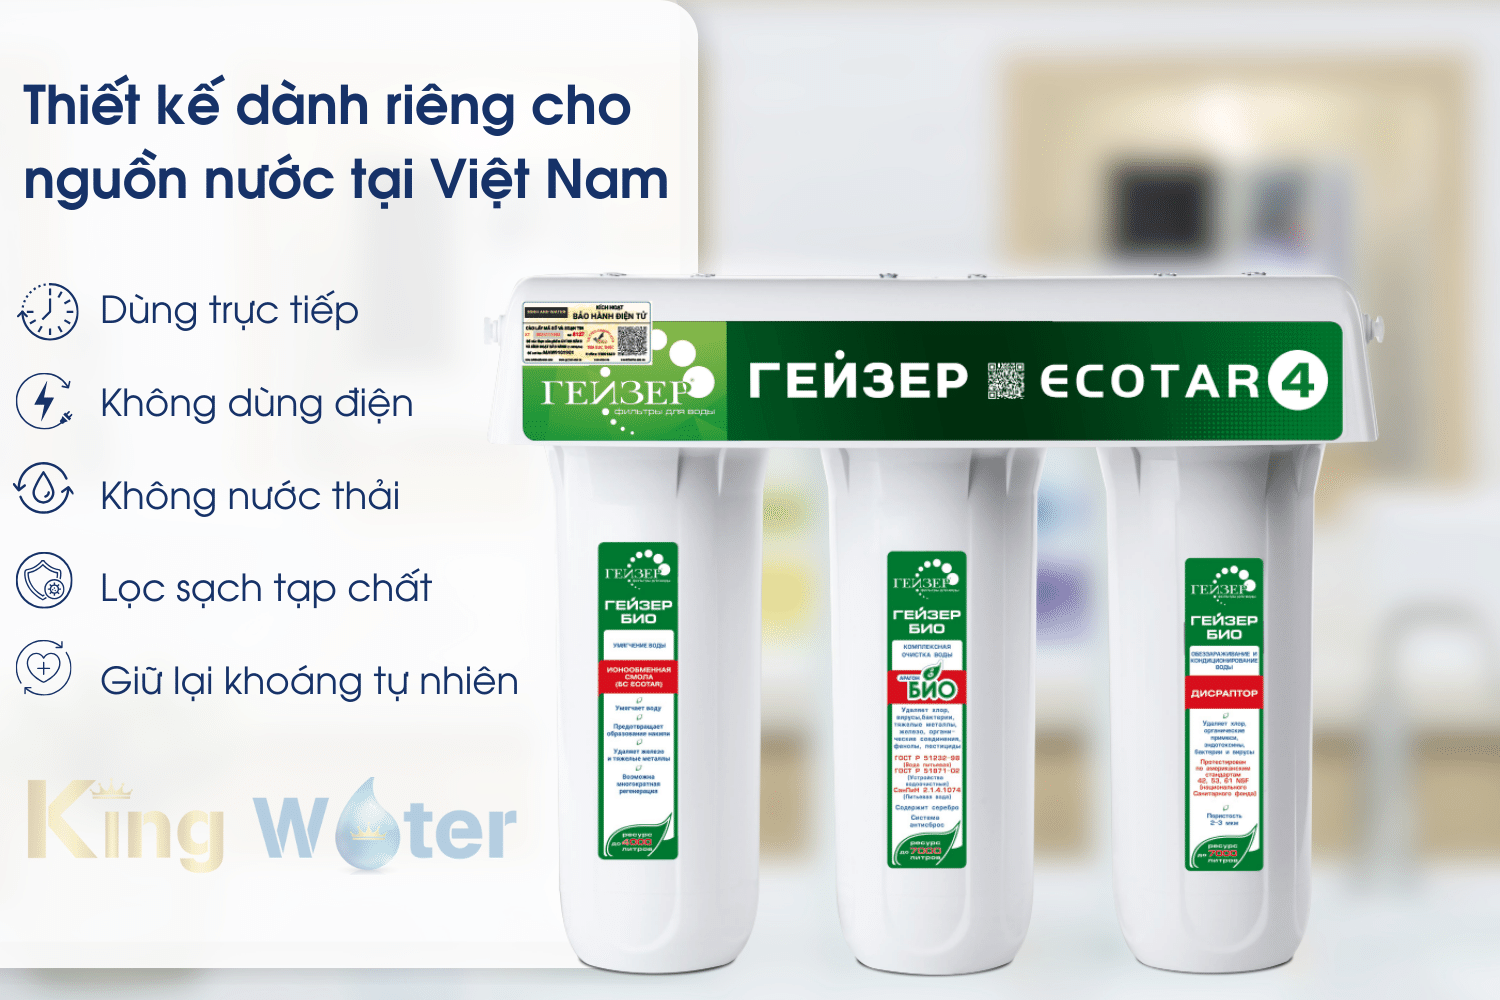 Máy lọc nước Geyser Ecotar 4 sở hữu nhiều tính năng nổi bật phù hợp với nguồn nước tại Việt Nam